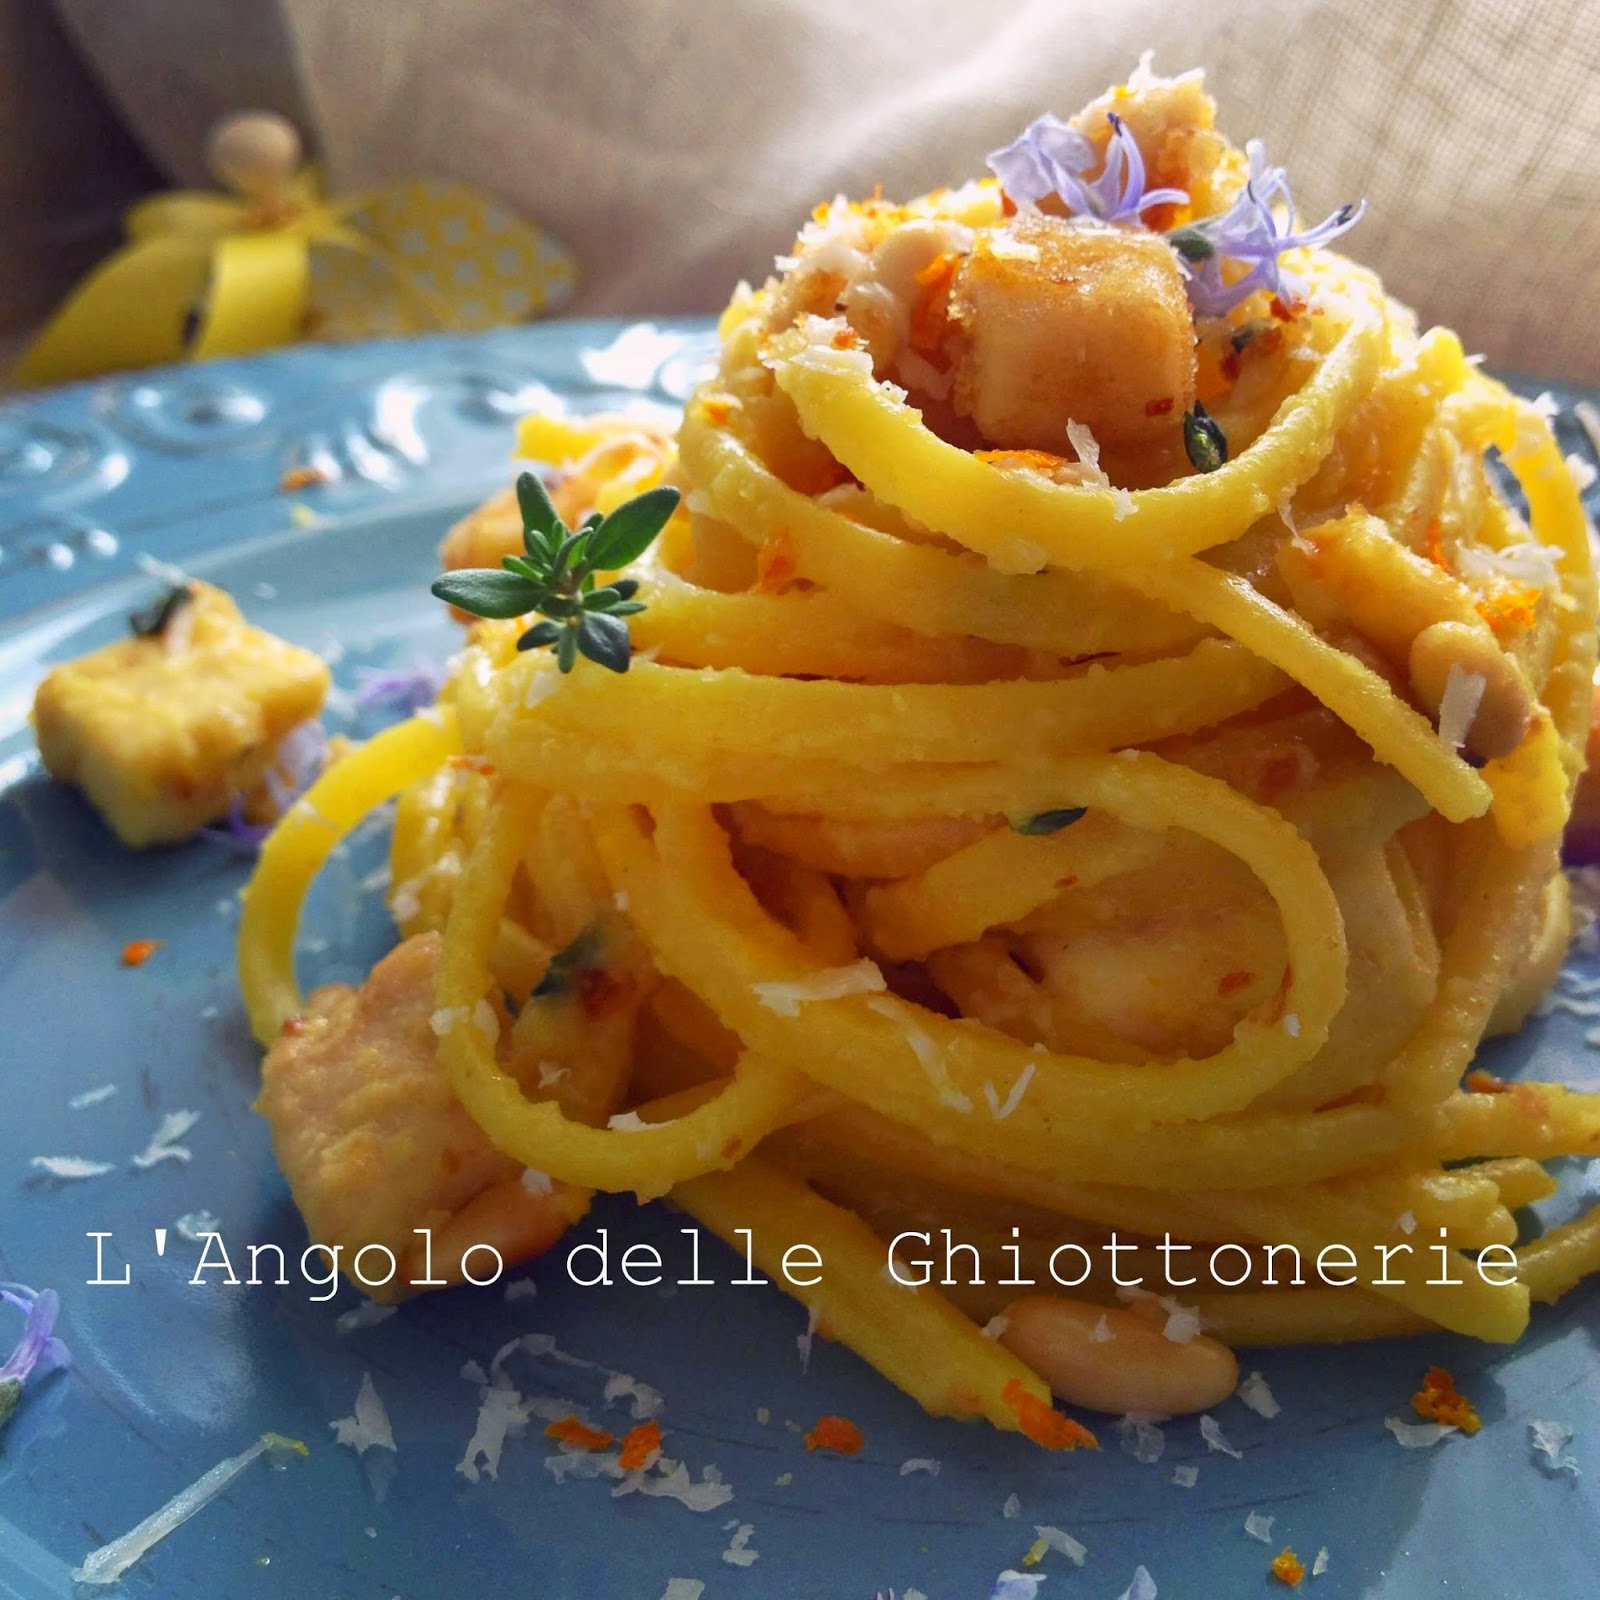 linguine allo zafferano con pepato fresco di sicilia, spada in panure aromatica e zeste d'arancia